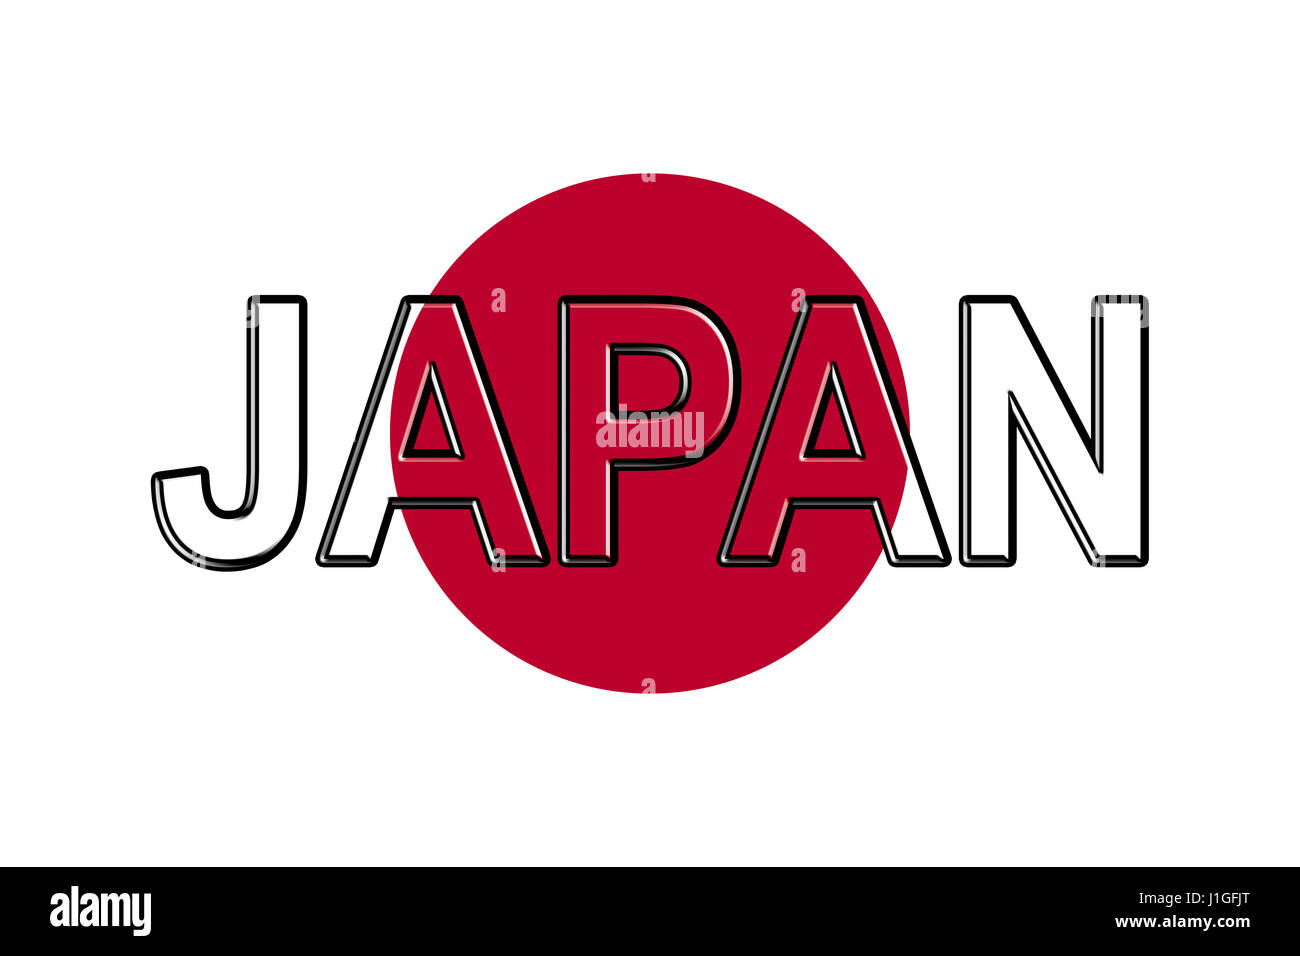 Abbildung der Flagge Japans mit dem Land auf die Fahne geschrieben. Stockfoto